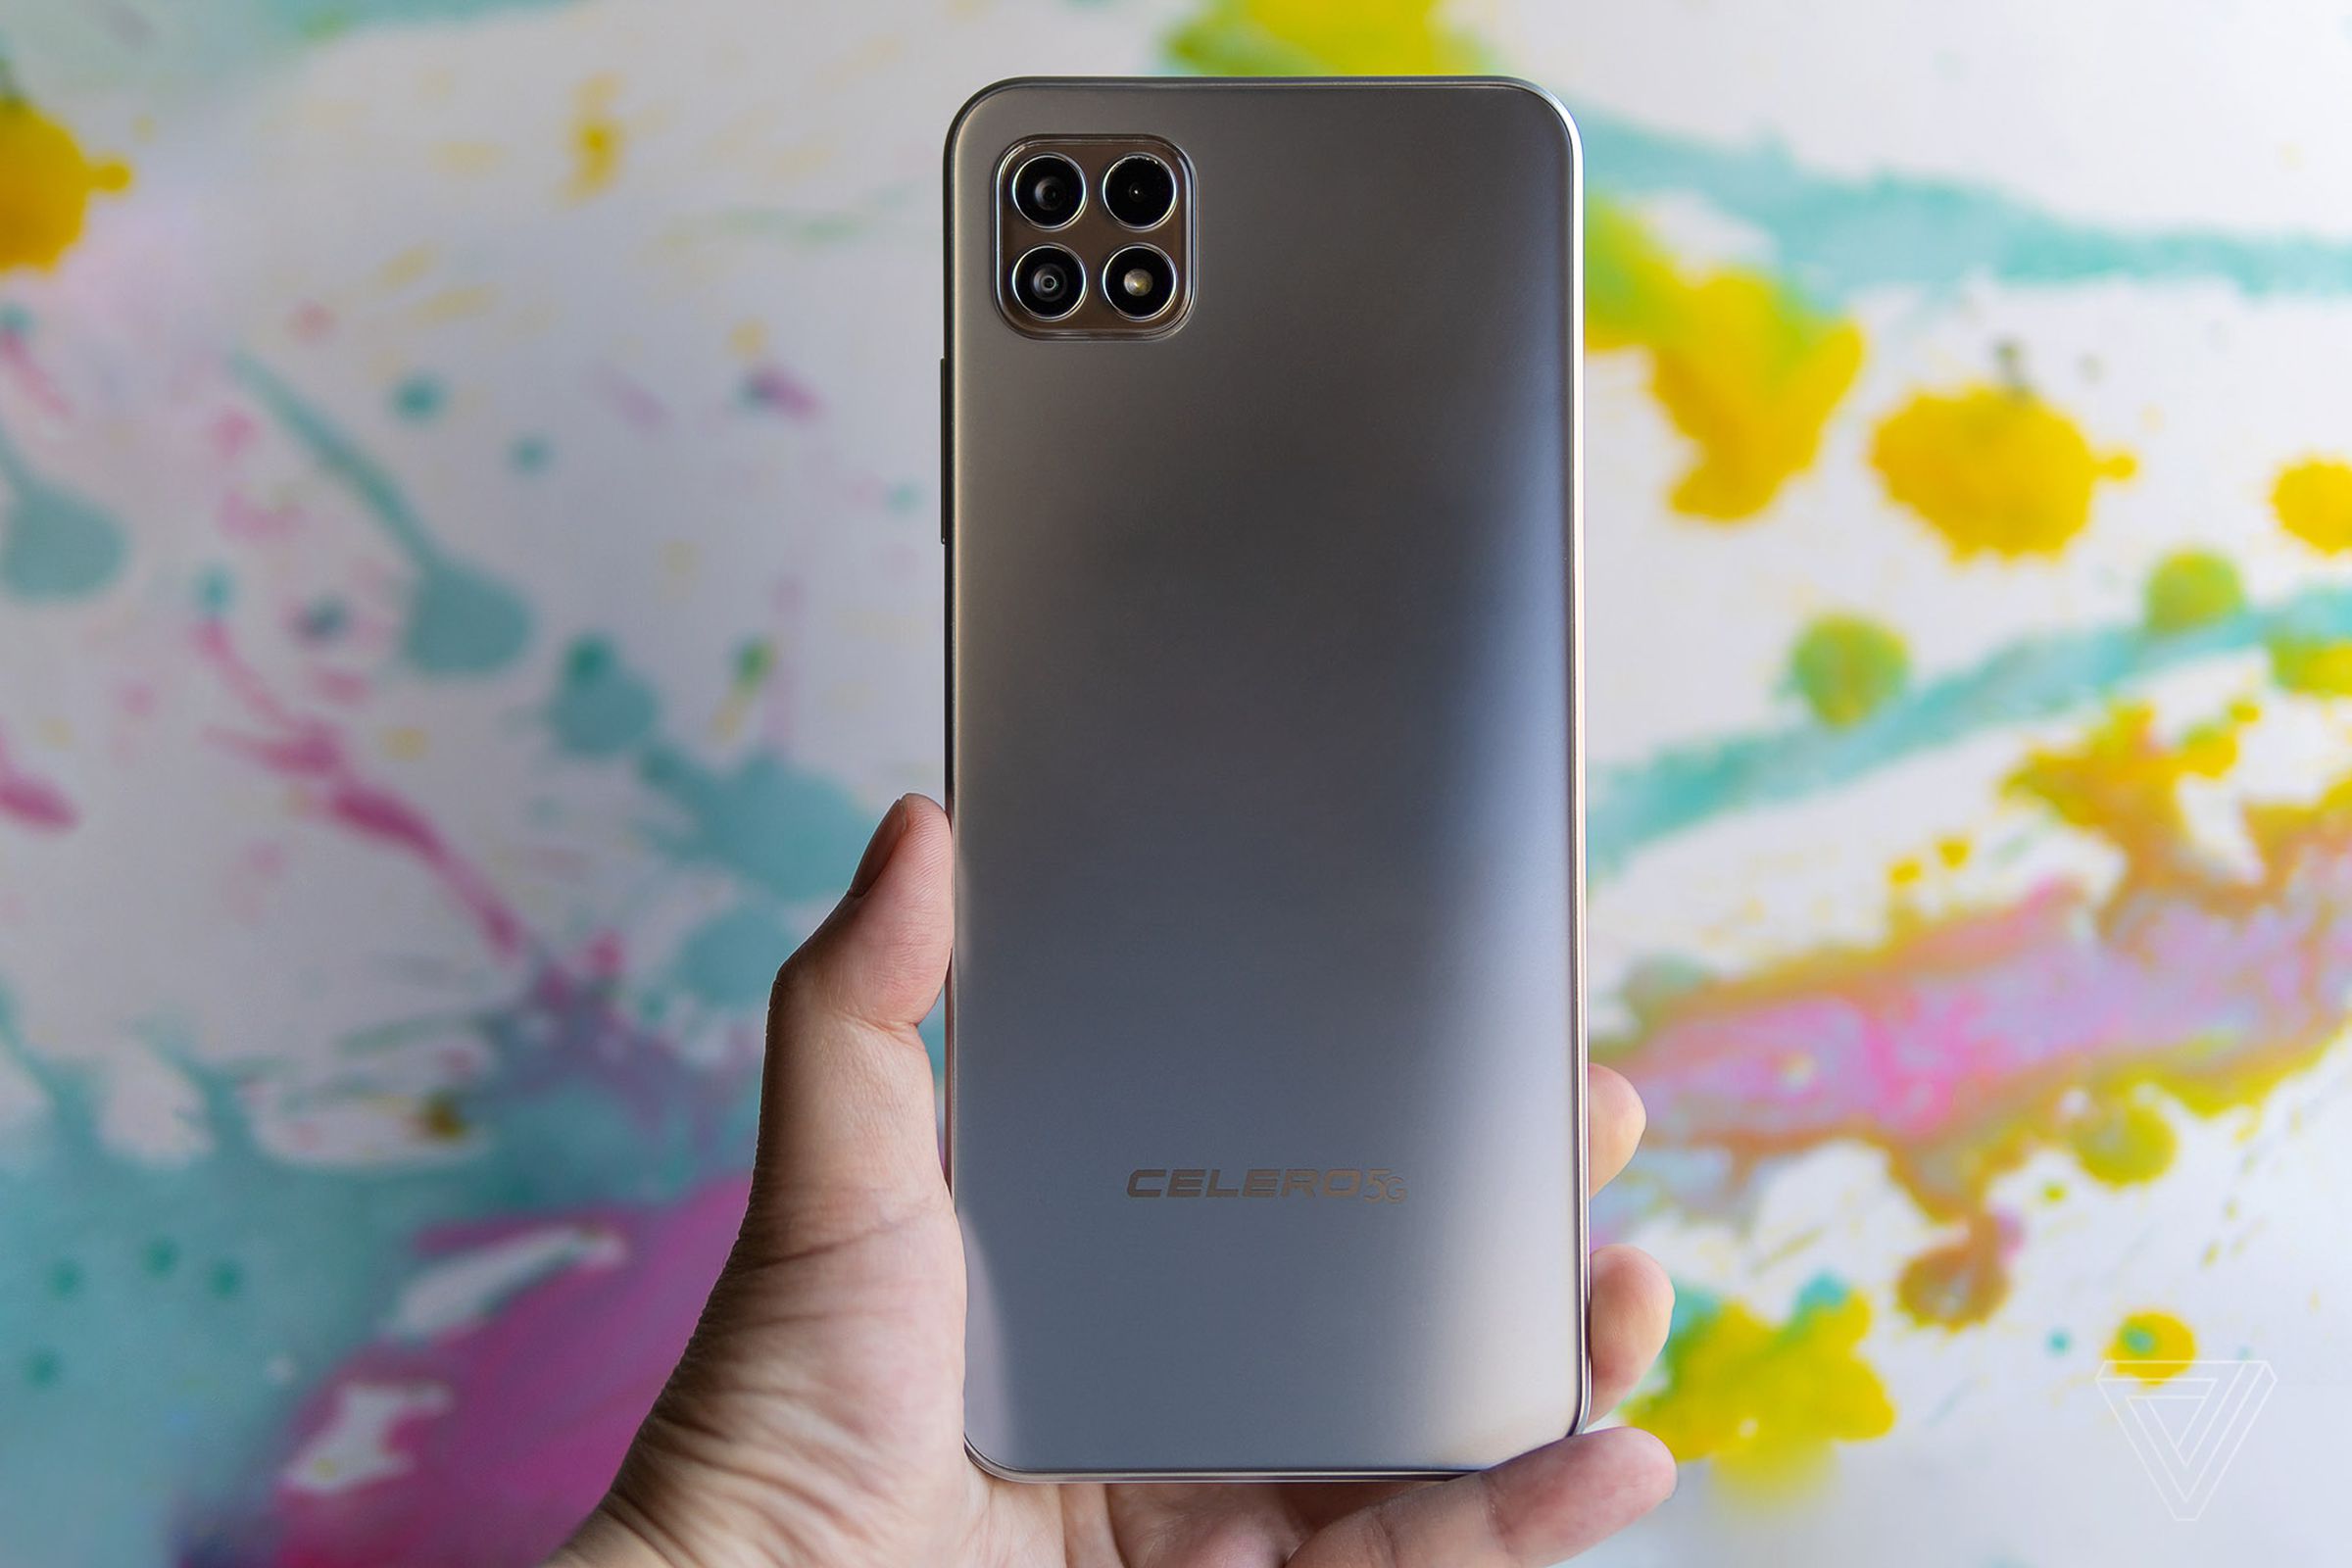 Celero 5G’s silver back cover